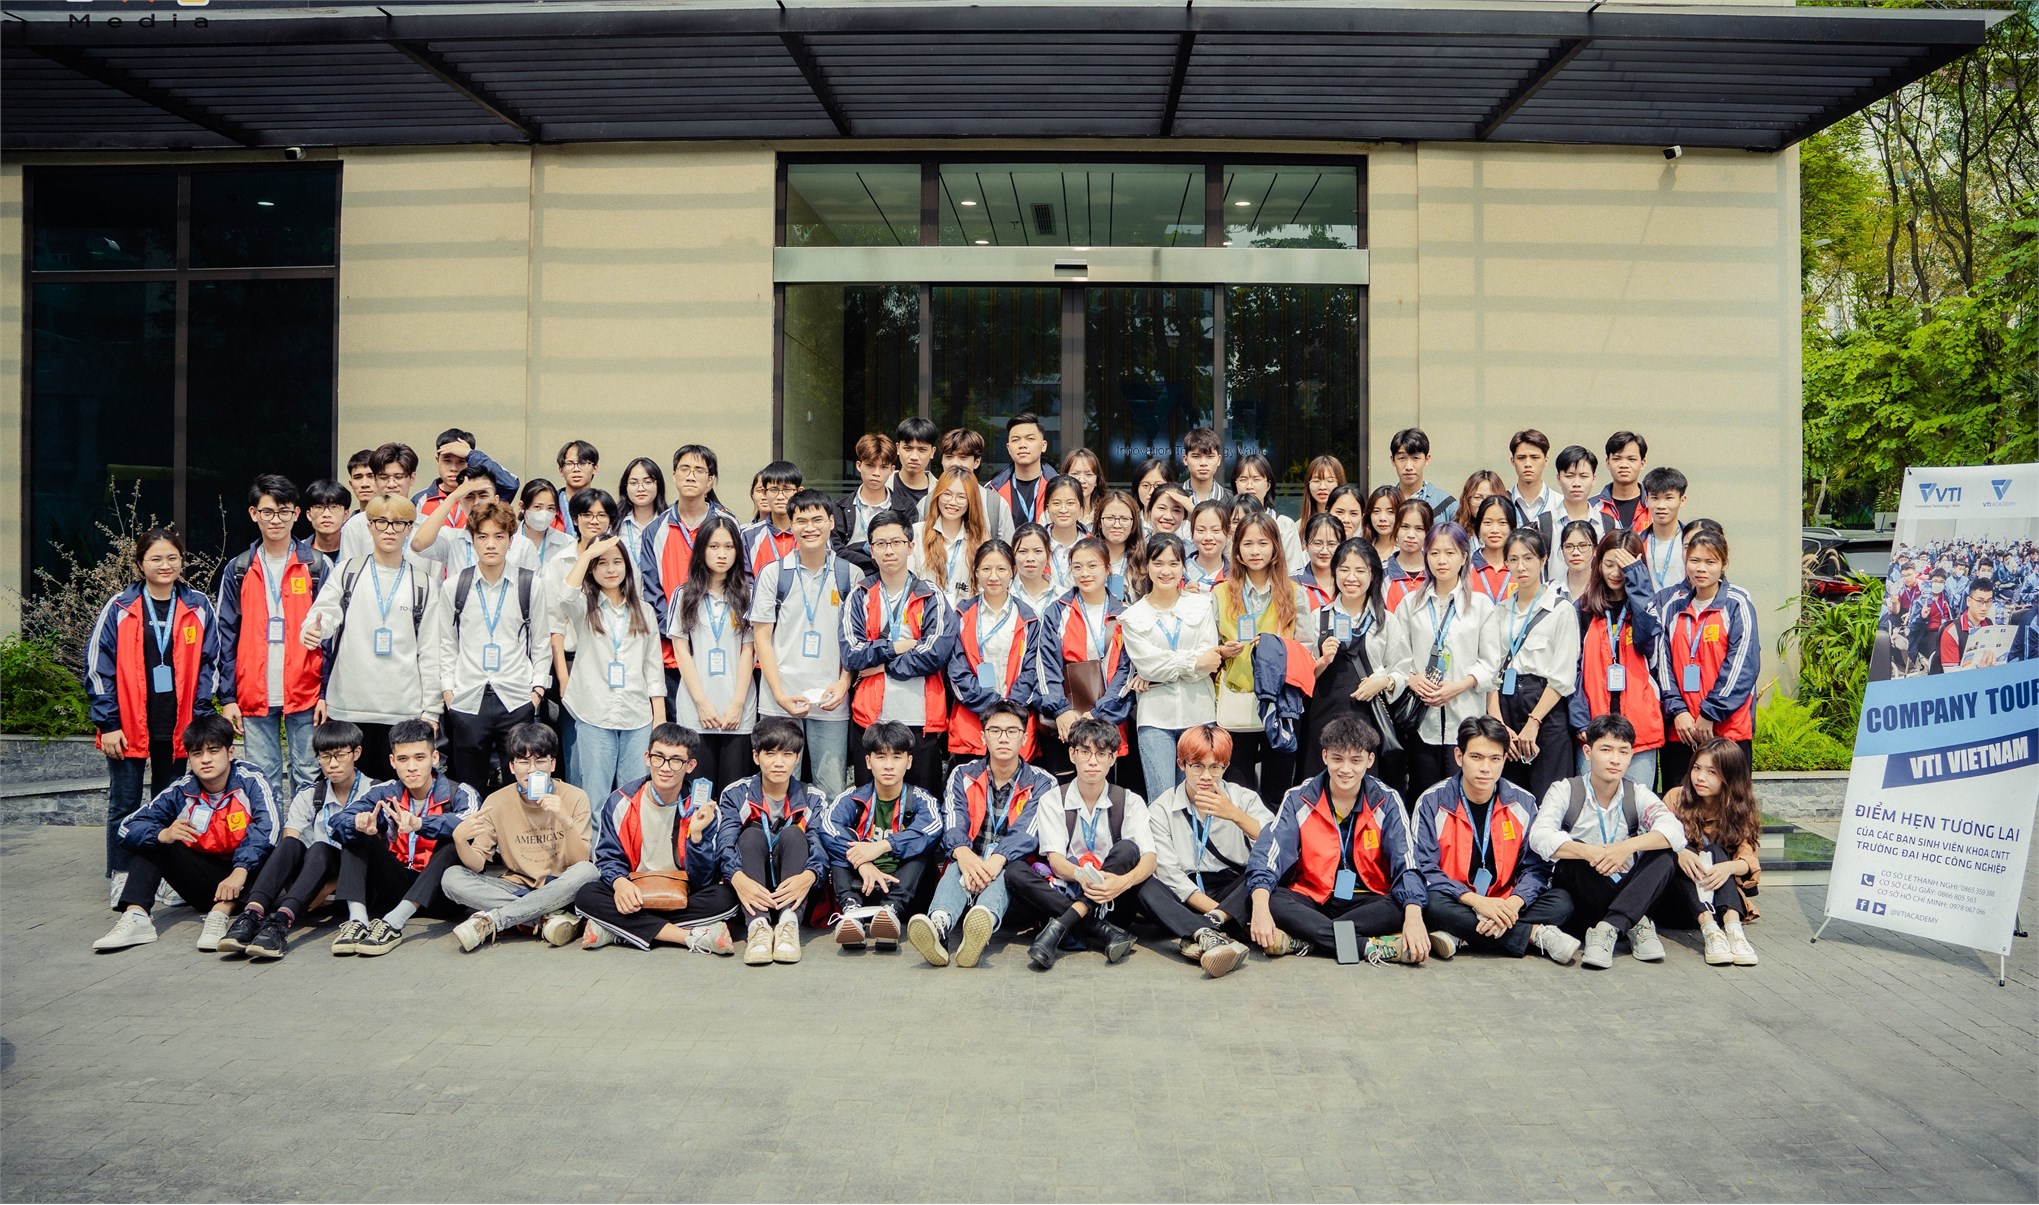 “Company Tour” cùng VTI: Điểm hẹn tương lai của sinh viên Trường Đại học Công nghiệp Hà Nội